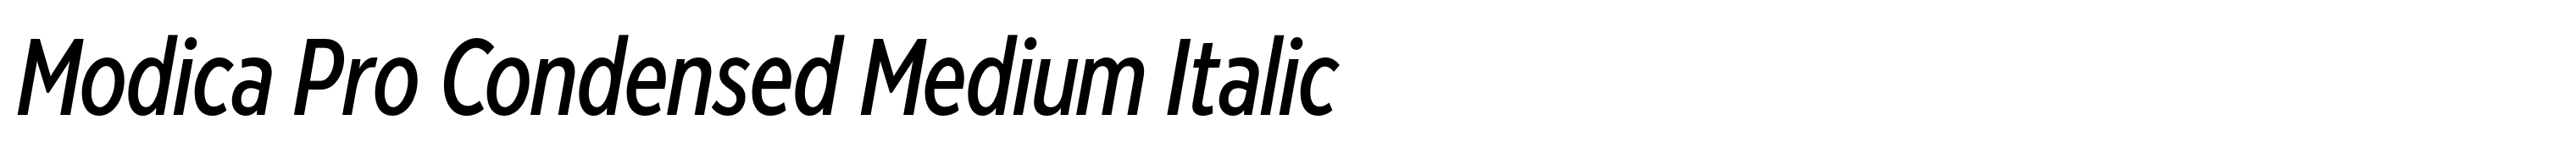 Modica Pro Condensed Medium Italic